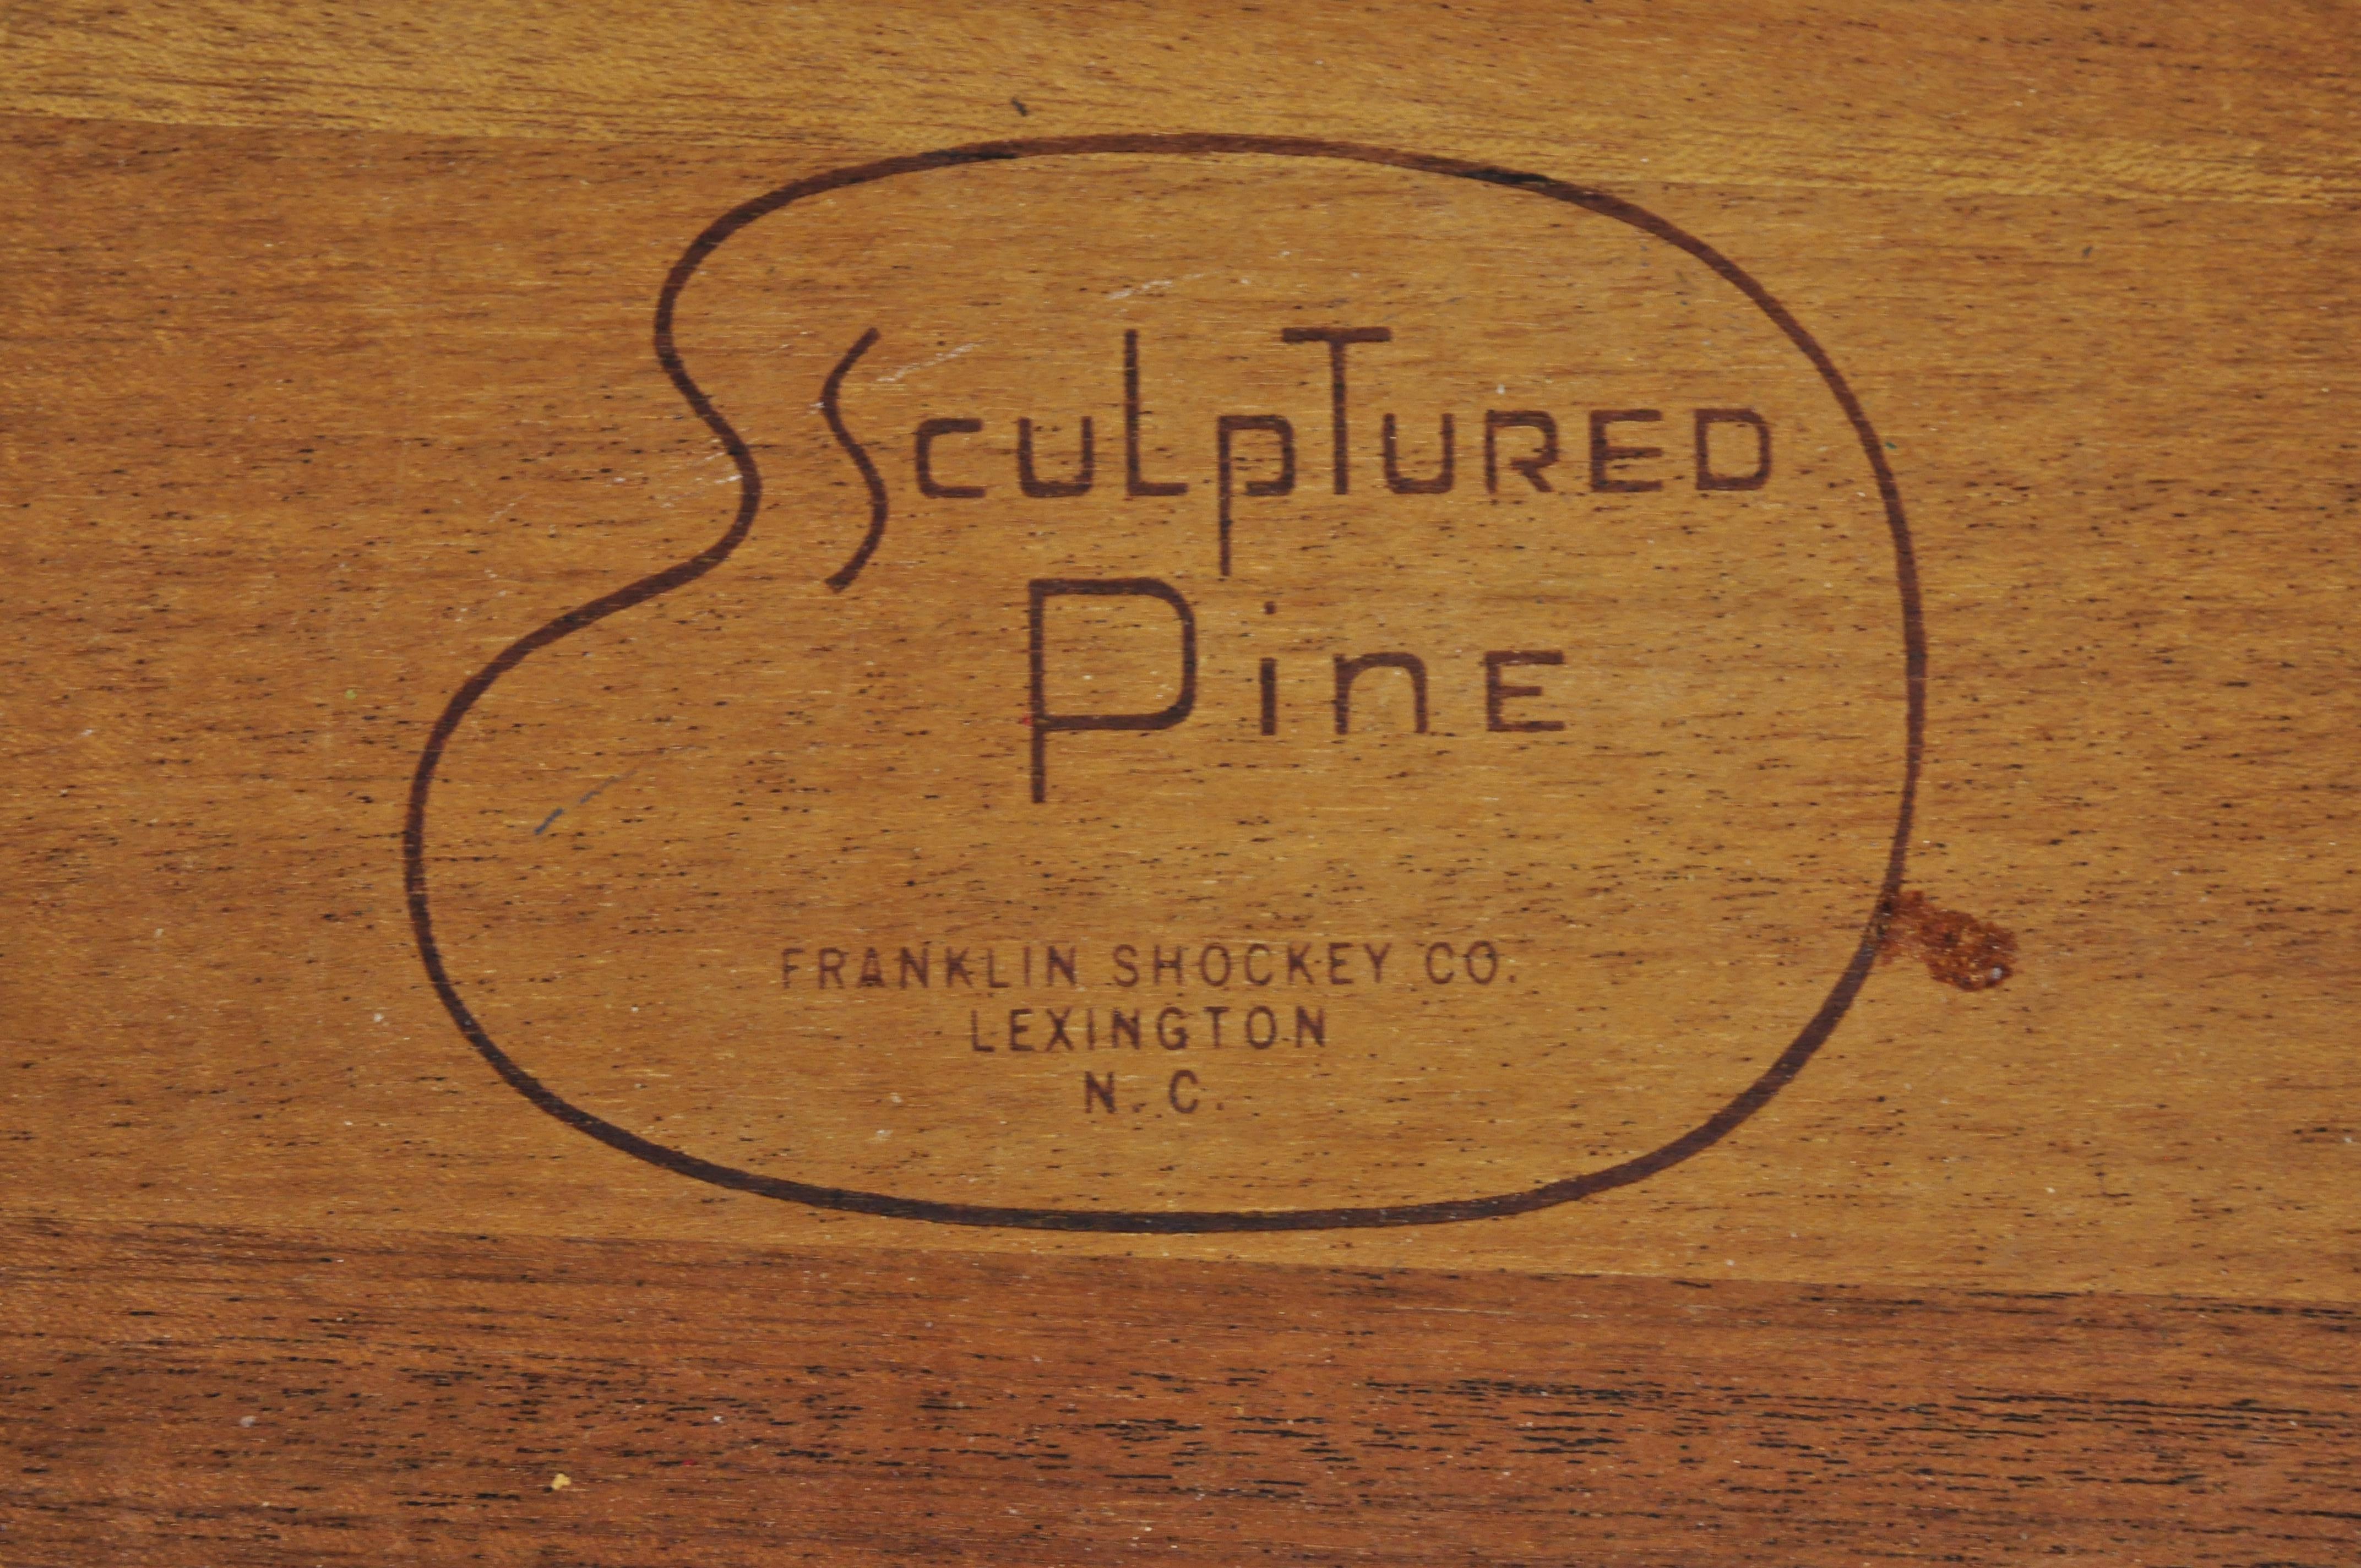 20th Century Midcentury Franklin Shockey Sculptured Pine Wood 8-Drawer Credenza Dresser